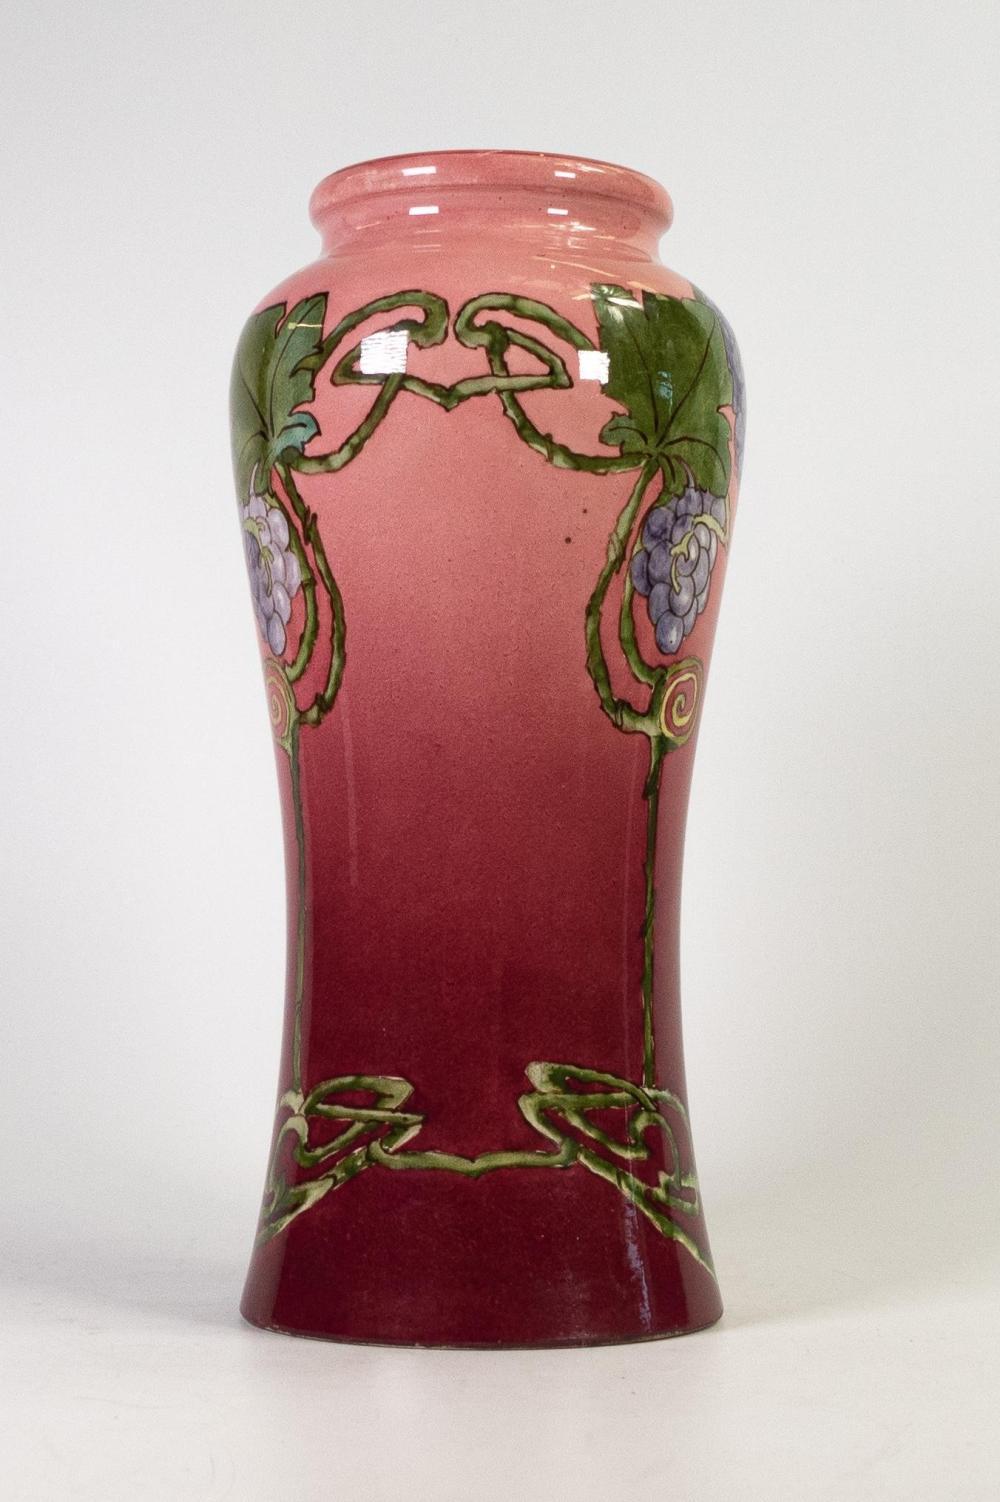 DOULTON Lambeth Faience vase de style ART NOUVEAU. Rose. Circa 1900. 

Superbes fleurs stylisées Art nouveau sur un  vase rose de Doulton Lambeth Faience. Une œuvre d'art de grande taille et très colorée. 